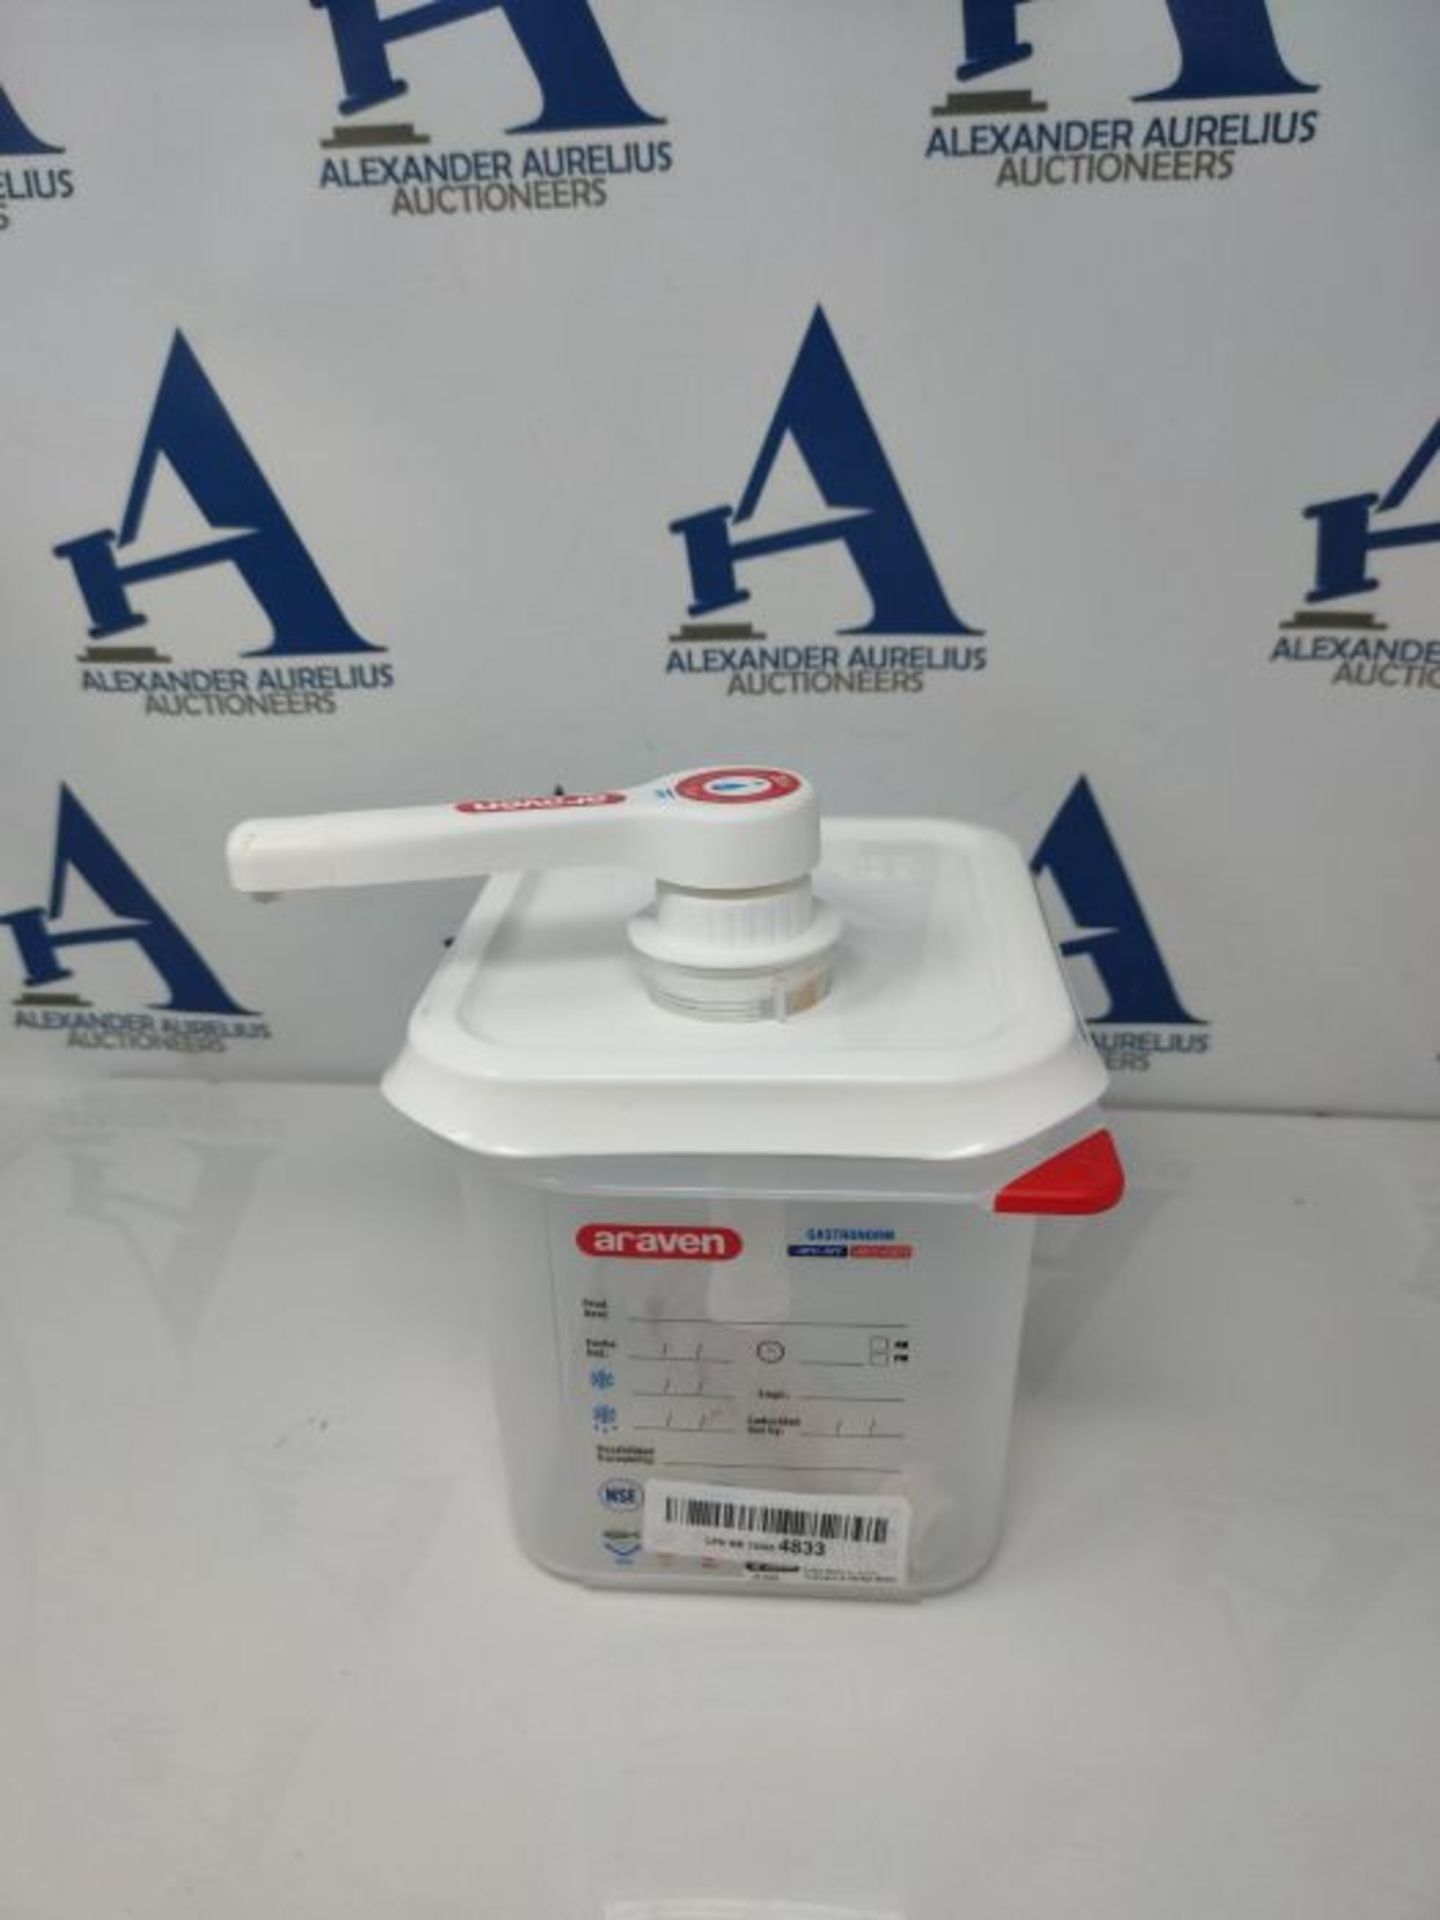 Araven RVN013 Sauce Dispenser Gn 1/6 Transparent 2.6Ltr Dishwasher Safe Push Pump - Image 3 of 3